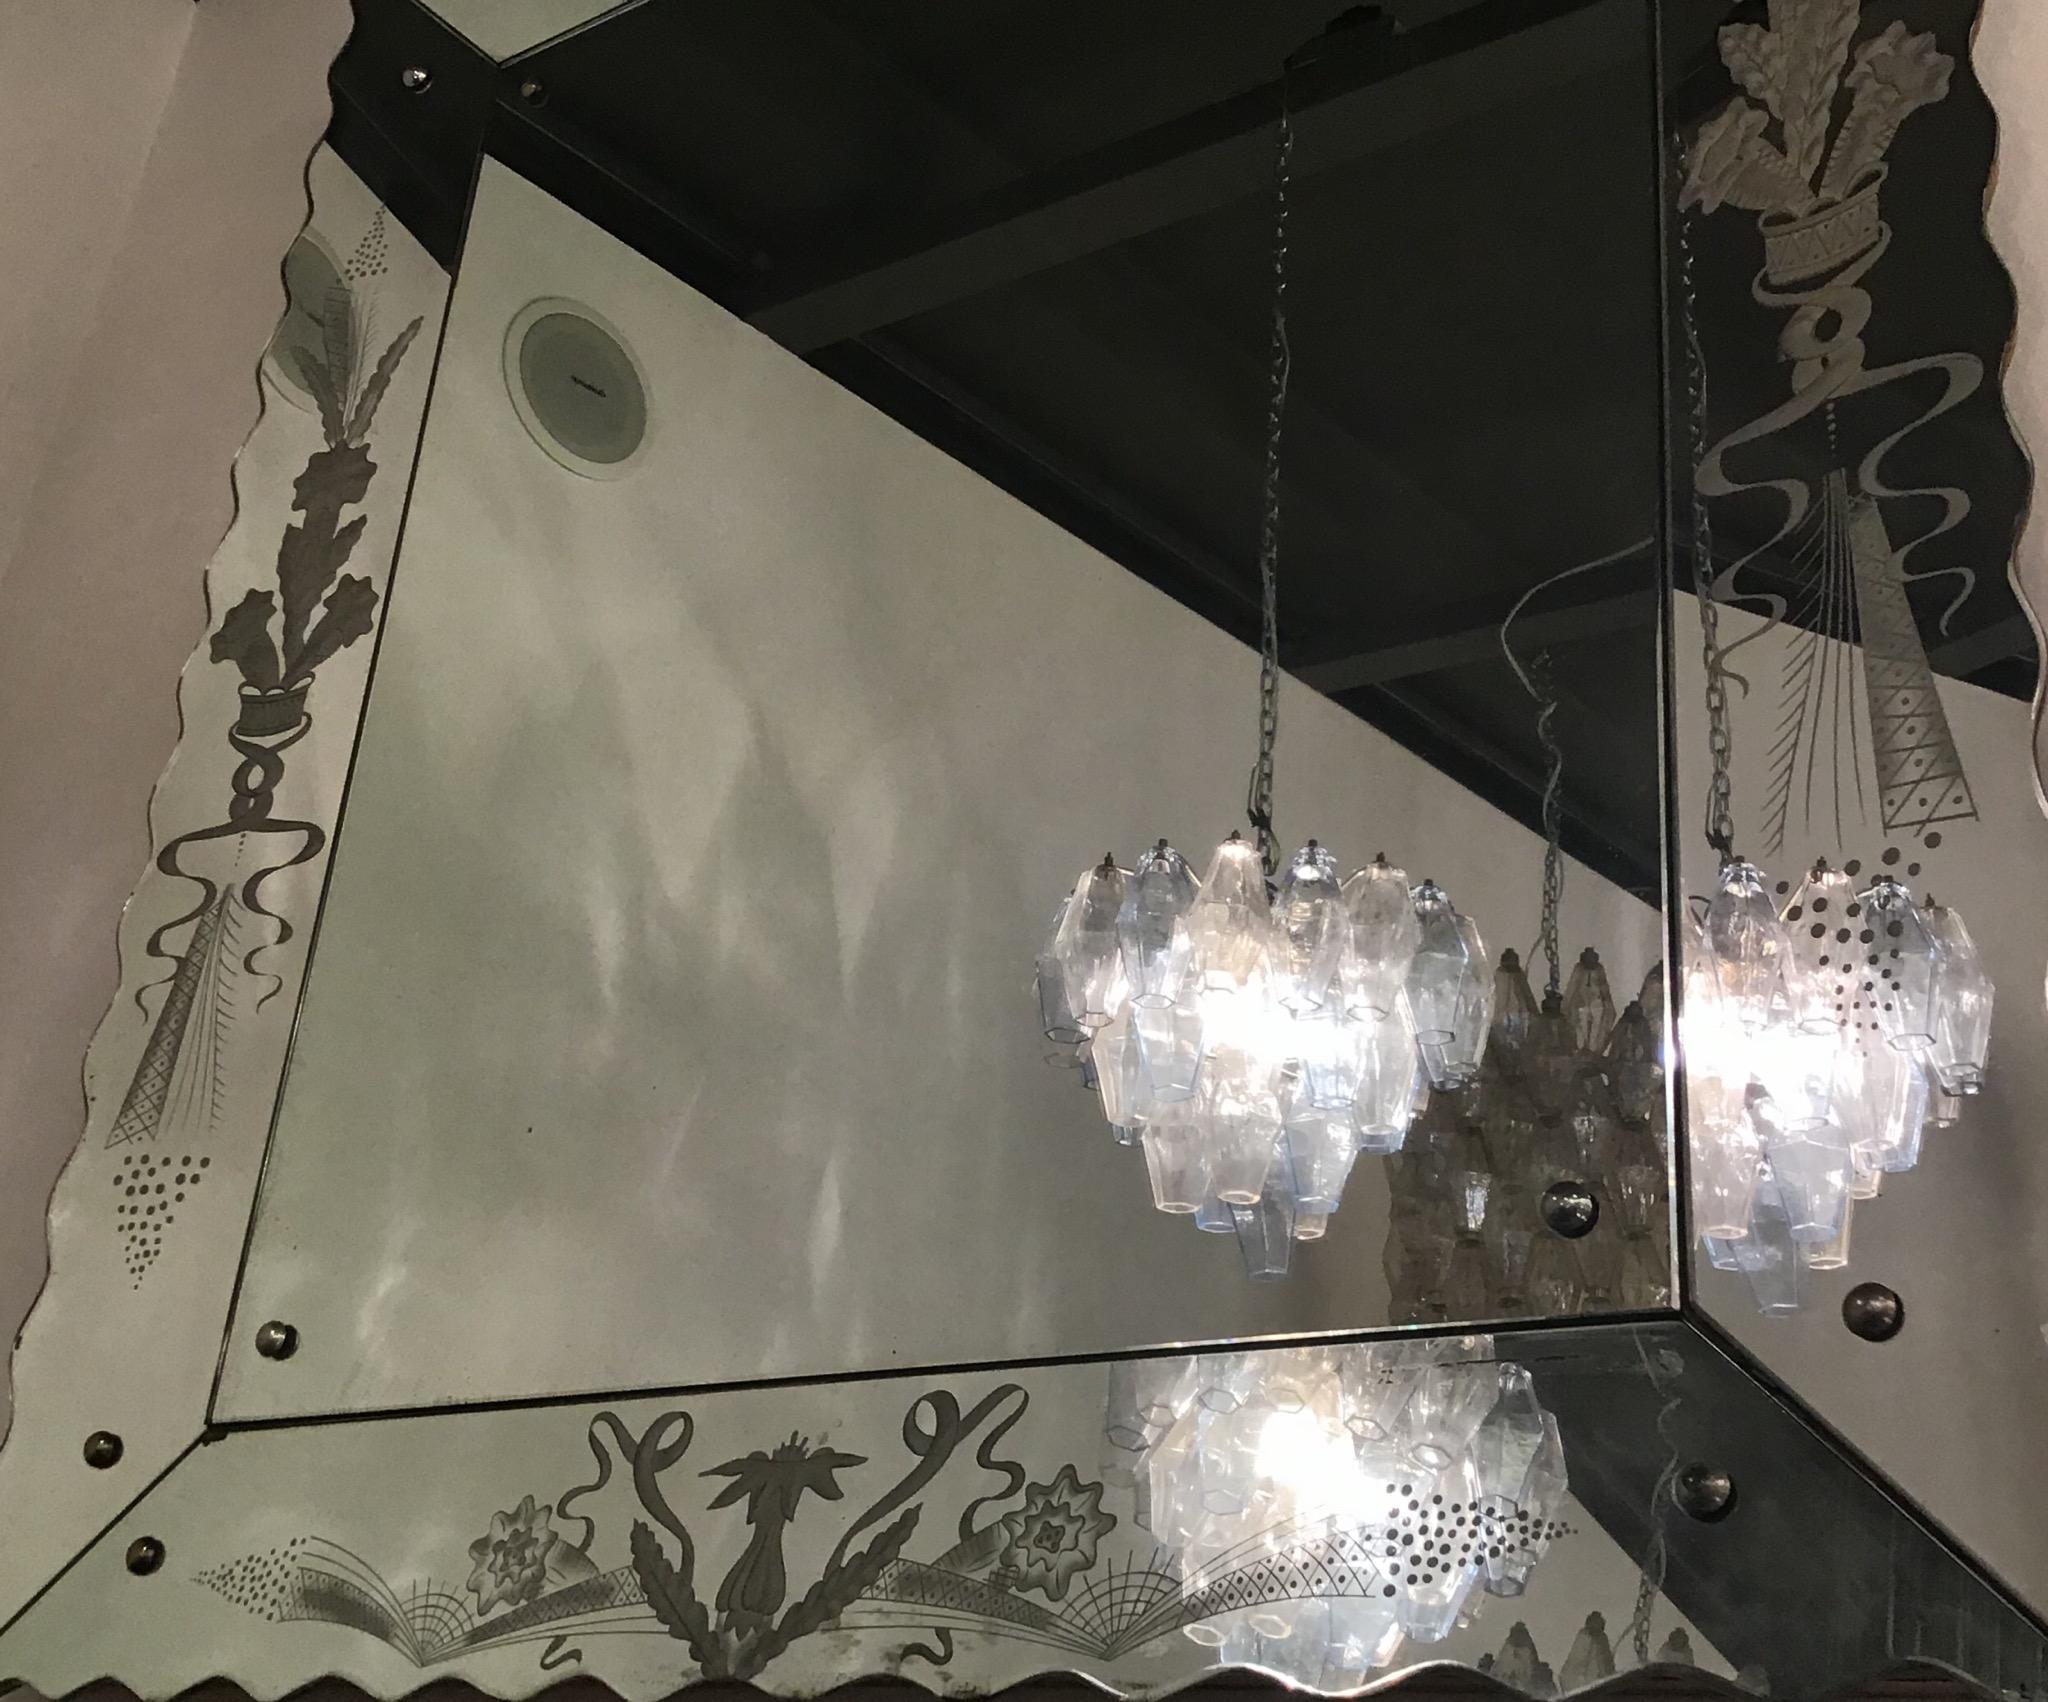 Venini Carlo Scarpa Poliedri couple chandeliers Murano glass, 1950, Italy.